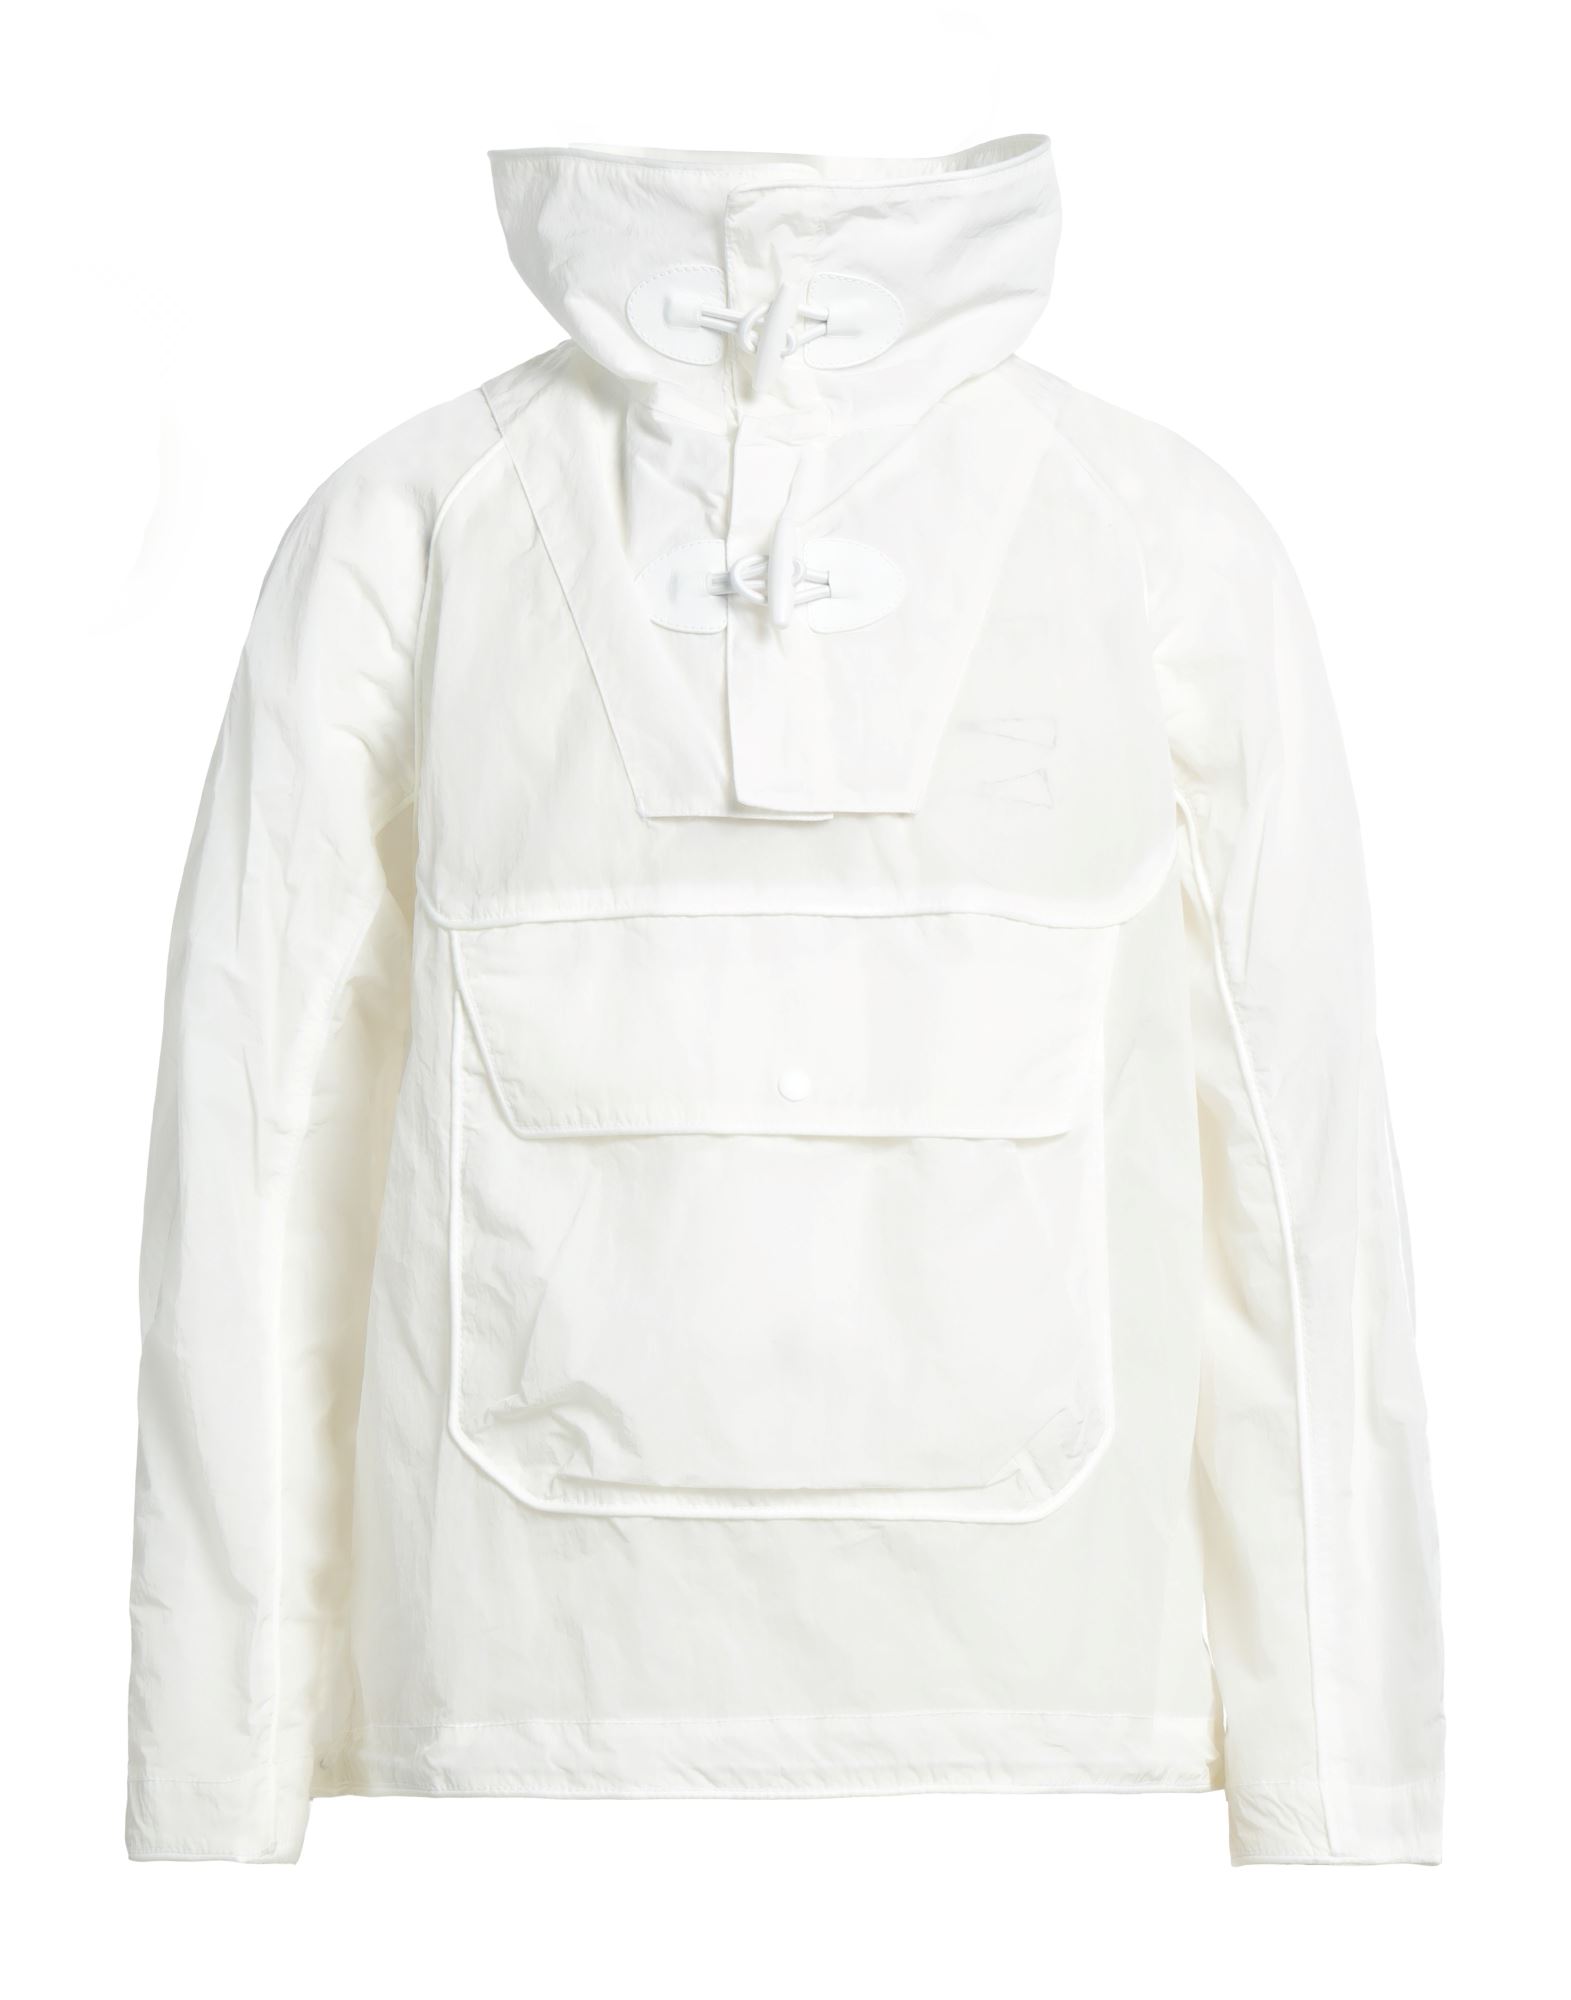 Emporio Armani Jackets In White